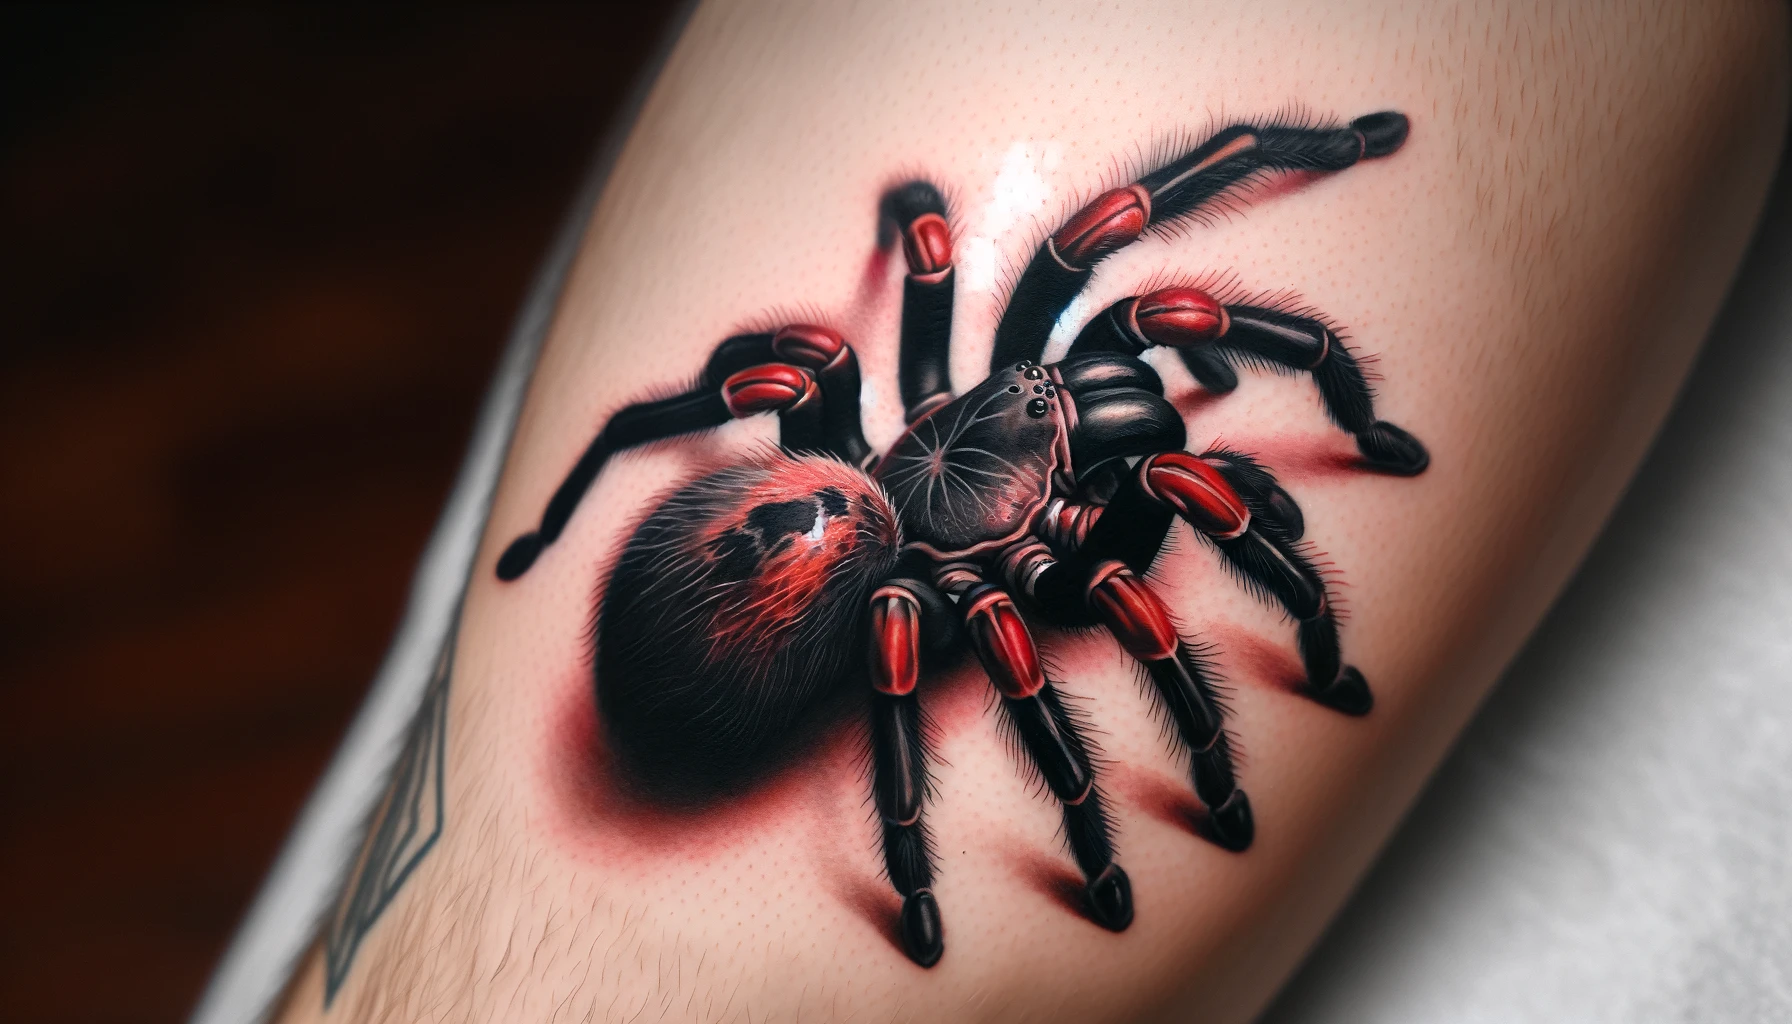 Tatuaż przedstawiający czarną tarantulę z czerwonymi akcentami na nogach sprawia wrażenie, jakby prawdziwy pająk przysiadł na skórze. Realistyczne detale i cienie nadają tatuażowi głębi, a otaczająca czerwona poświata dodaje dramatyzmu kompozycji